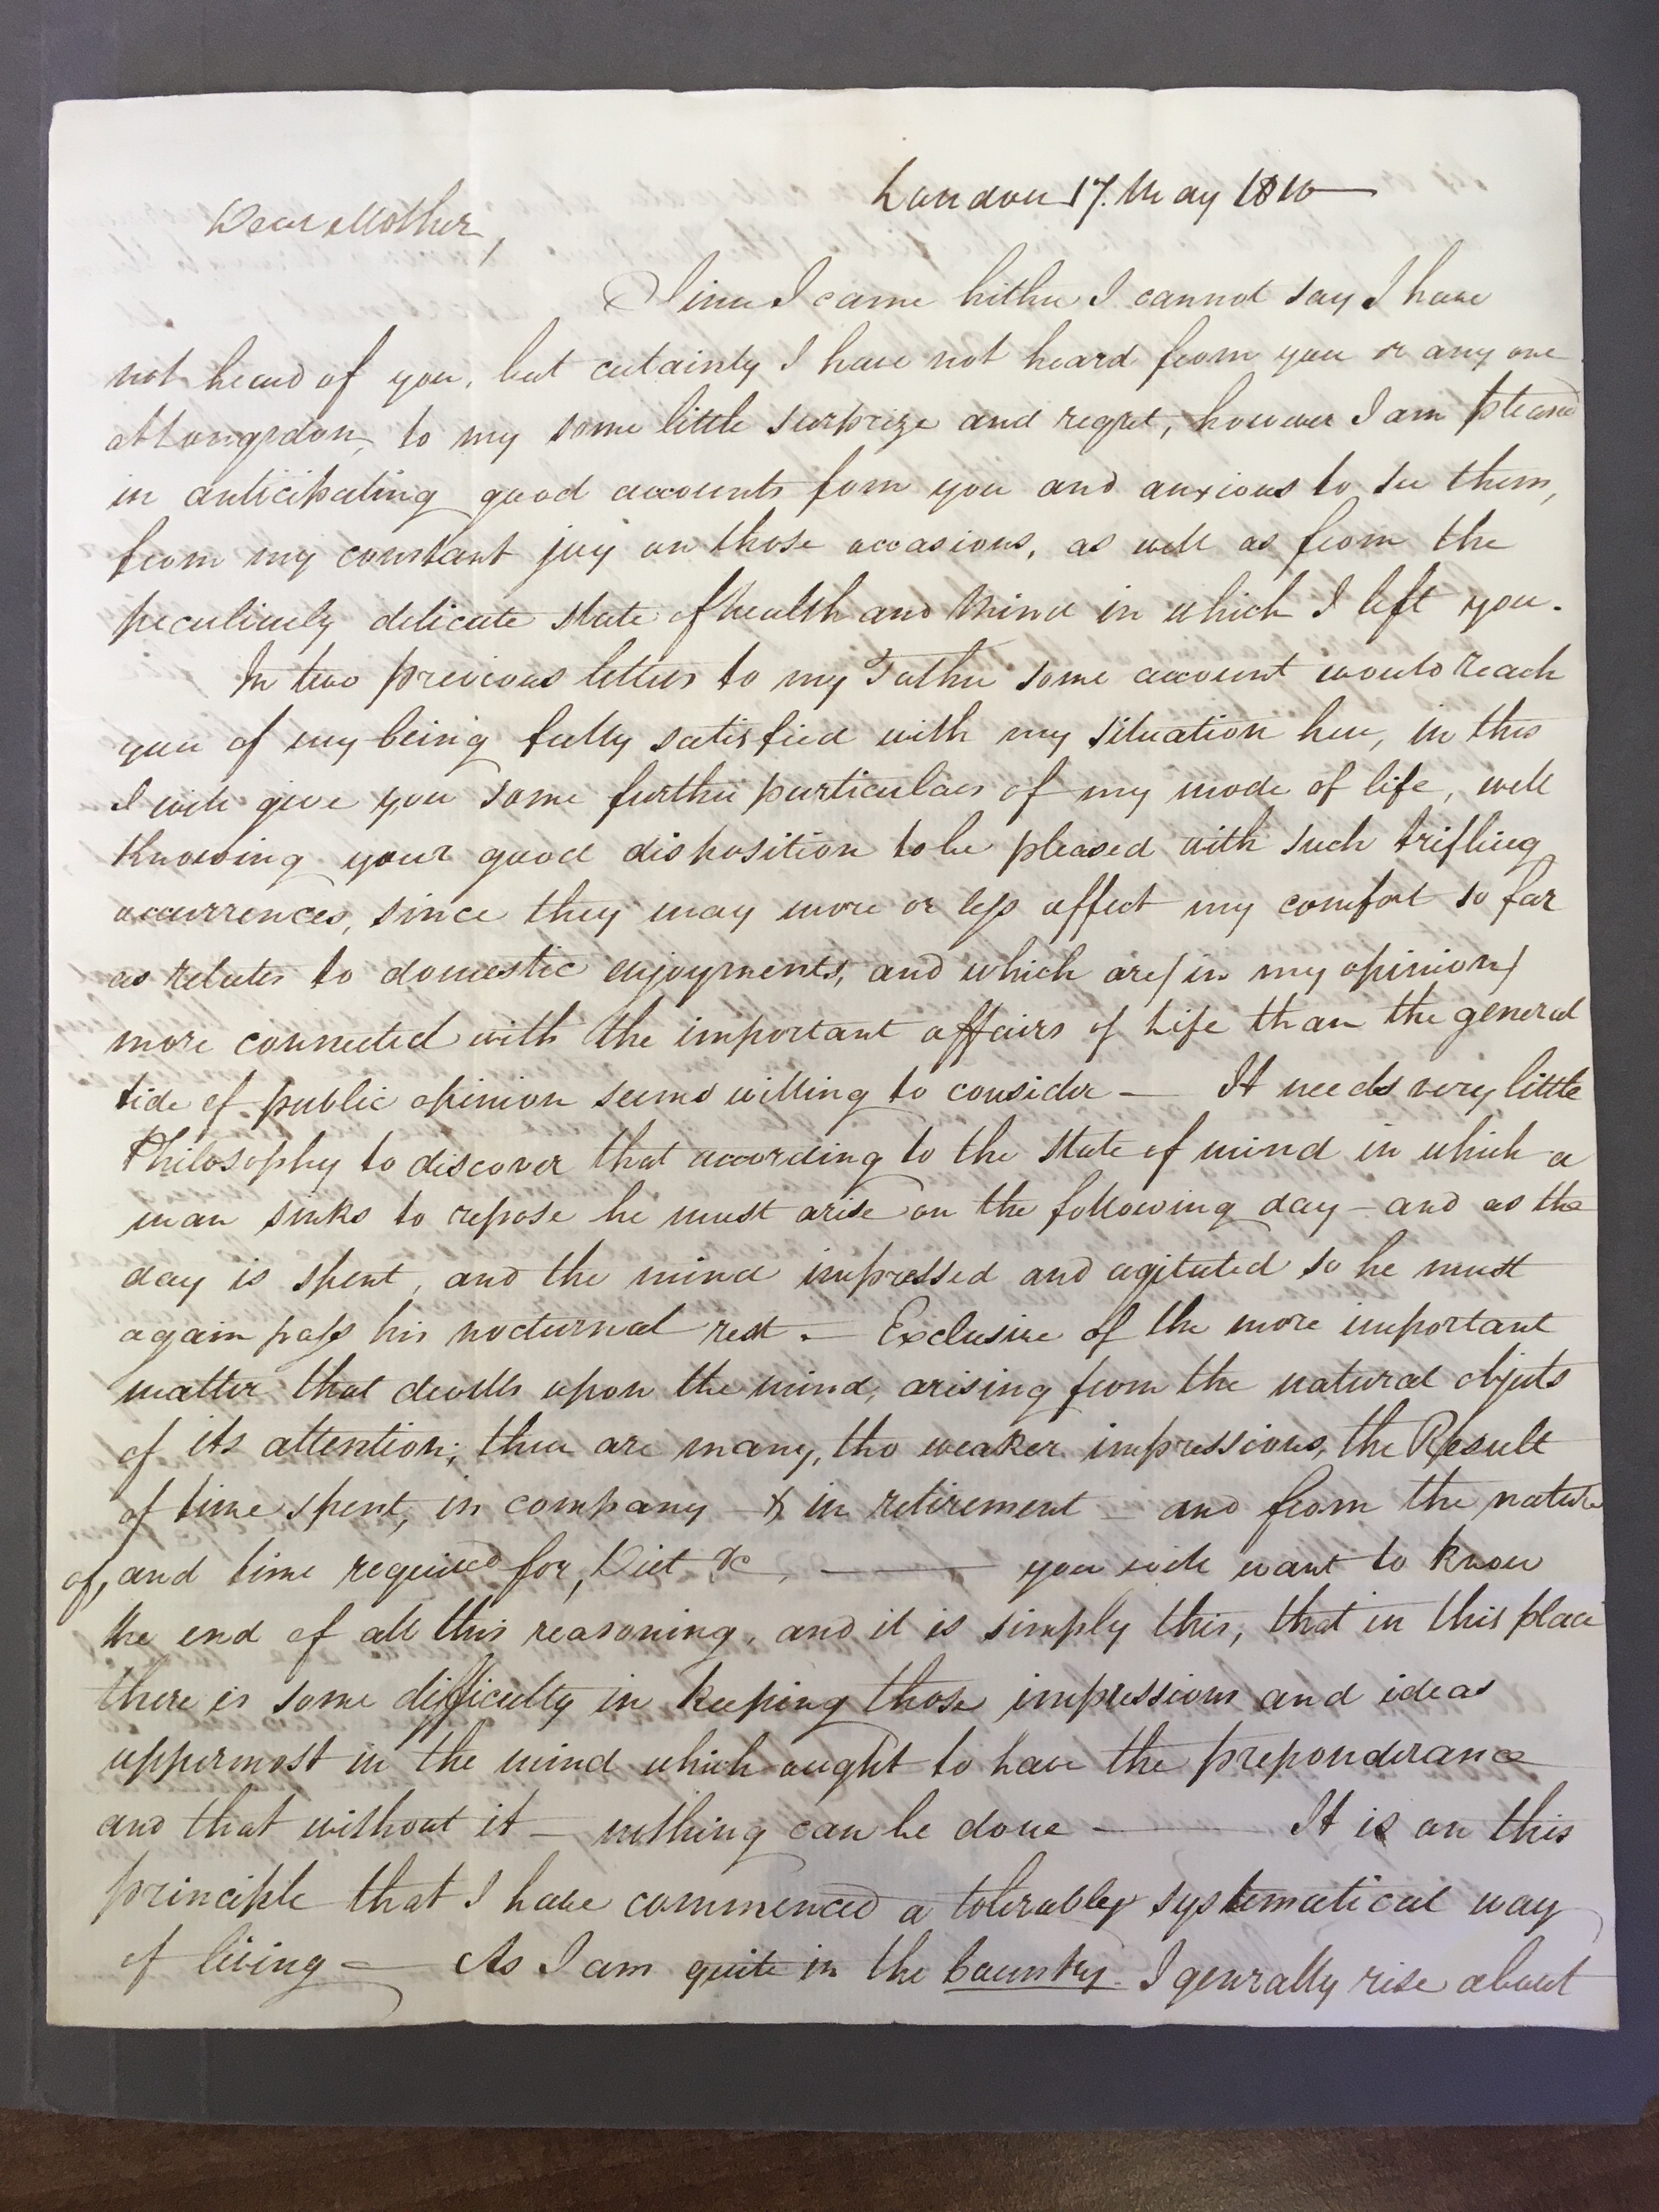 Image #1 of letter: John Longsdon to Elizabeth Longsdon (snr), 17 May 1810